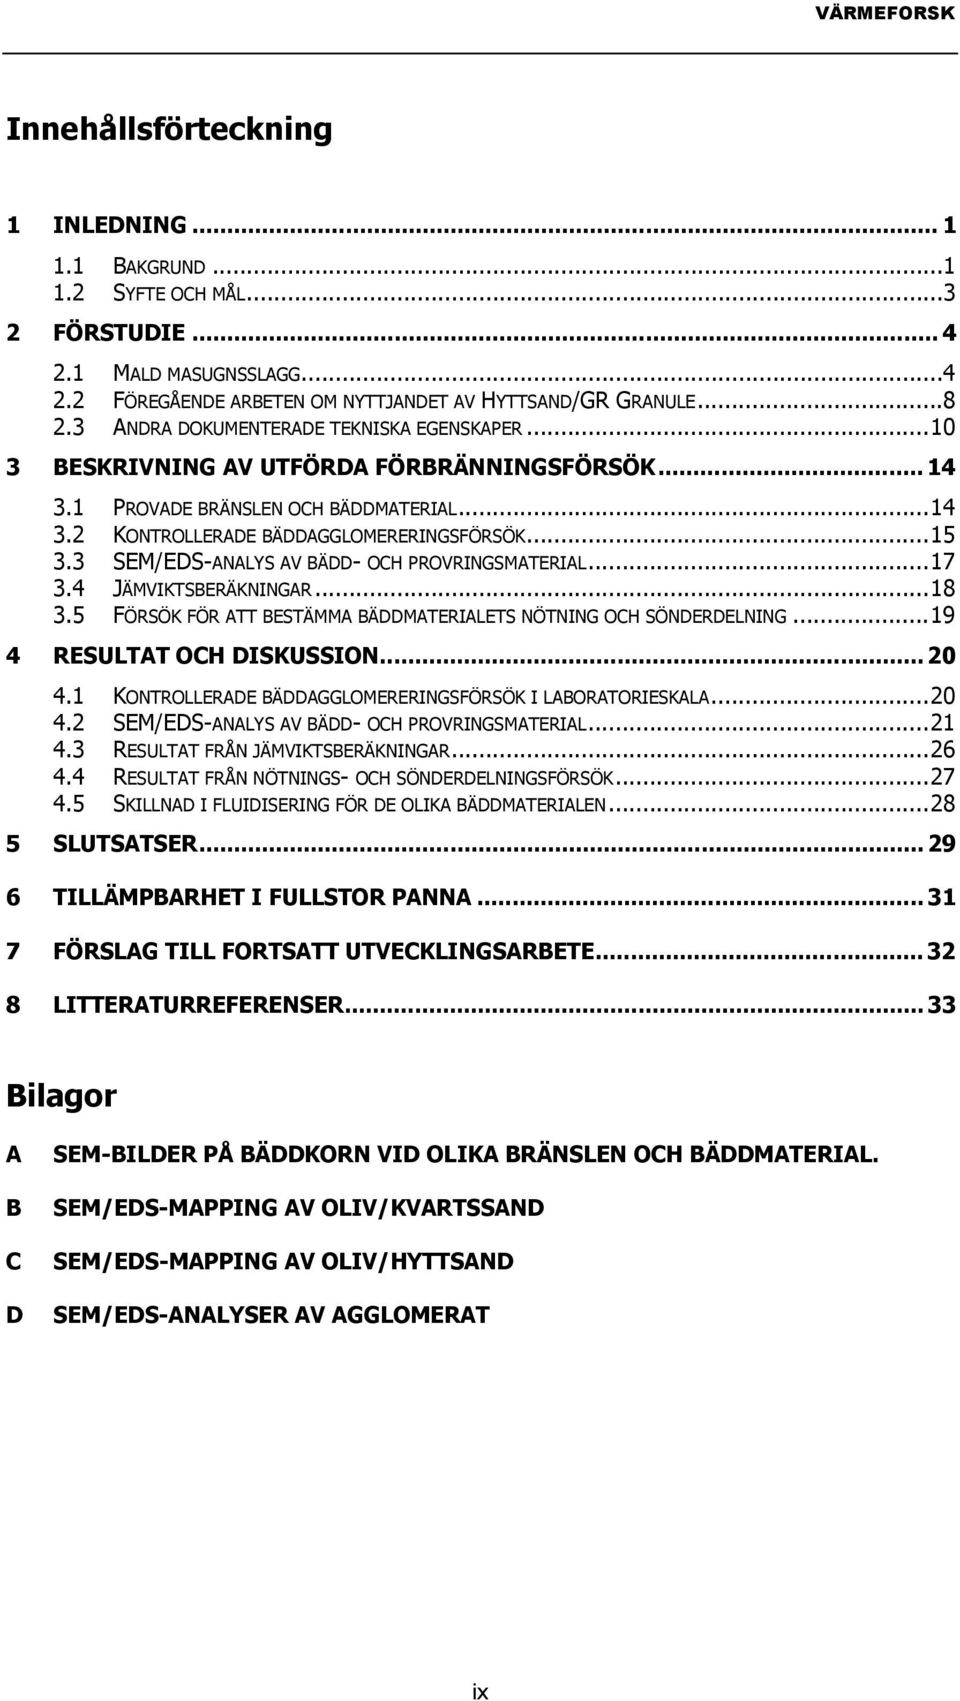 3 SEM/EDS-ANALYS AV BÄDD- OCH PROVRINGSMATERIAL...17 3.4 JÄMVIKTSBERÄKNINGAR...18 3.5 FÖRSÖK FÖR ATT BESTÄMMA BÄDDMATERIALETS NÖTNING OCH SÖNDERDELNING...19 4 RESULTAT OCH DISKUSSION... 20 4.